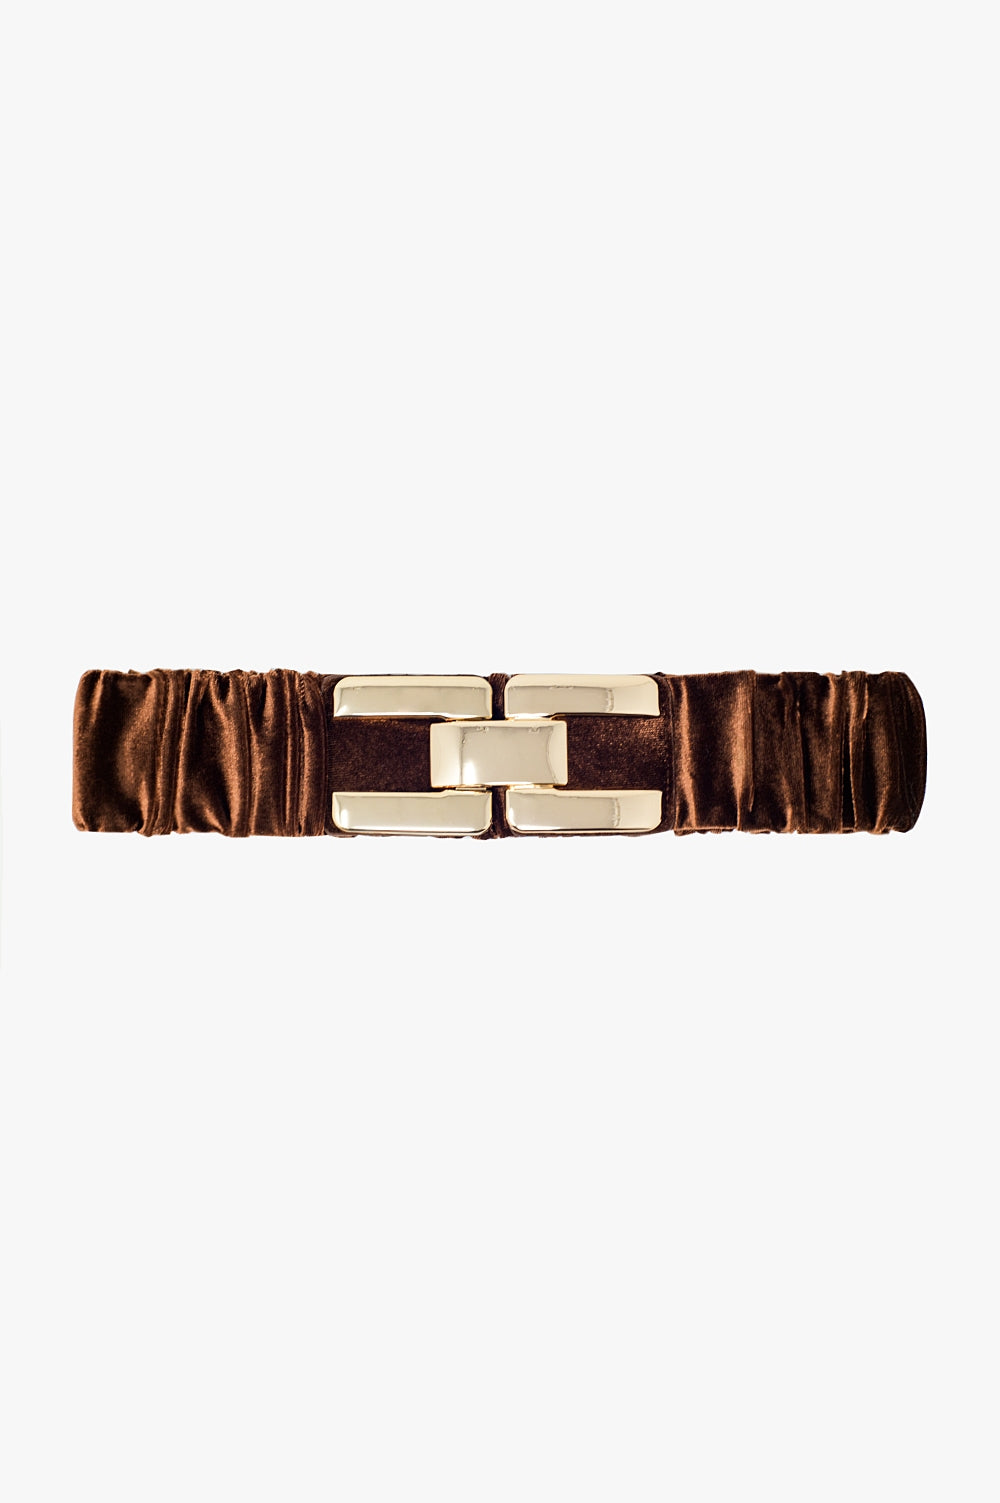 Q2 Cintura in velluto elastico marrone con chiusura in metallo